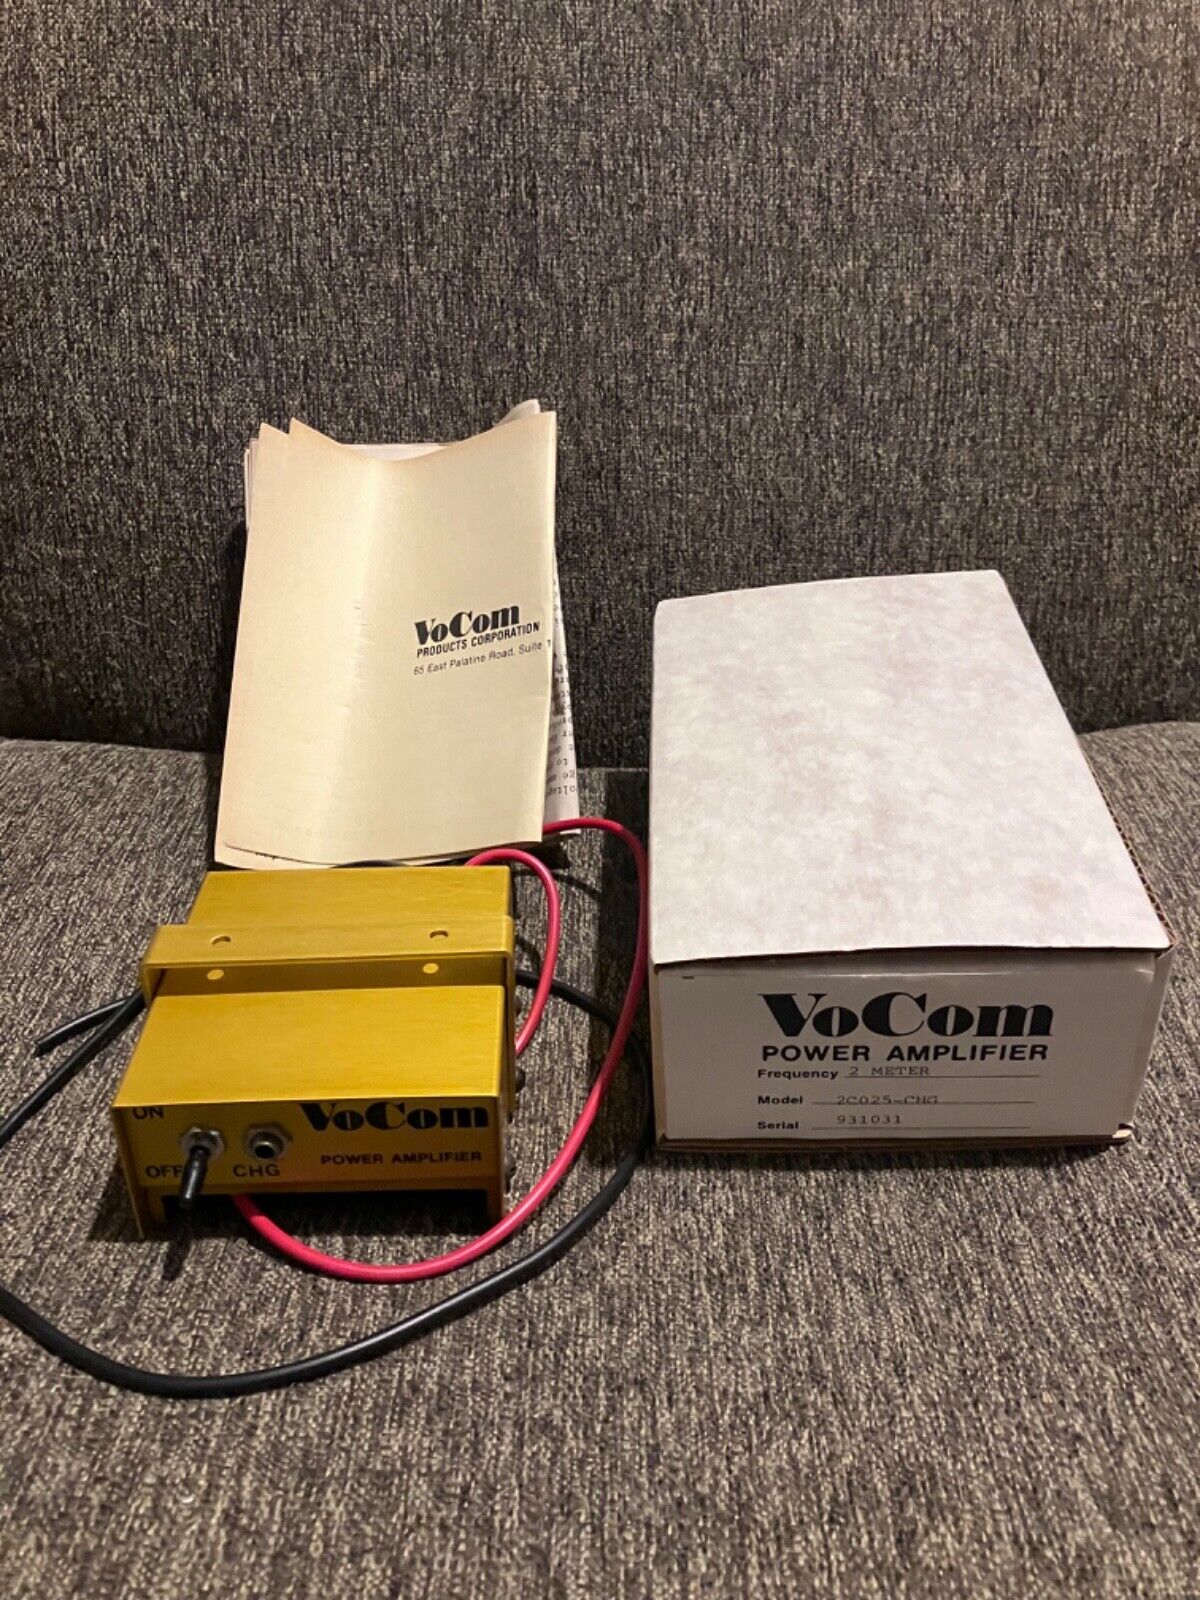 VoCom Power Amplifier - New in Box - 25 Watt Out